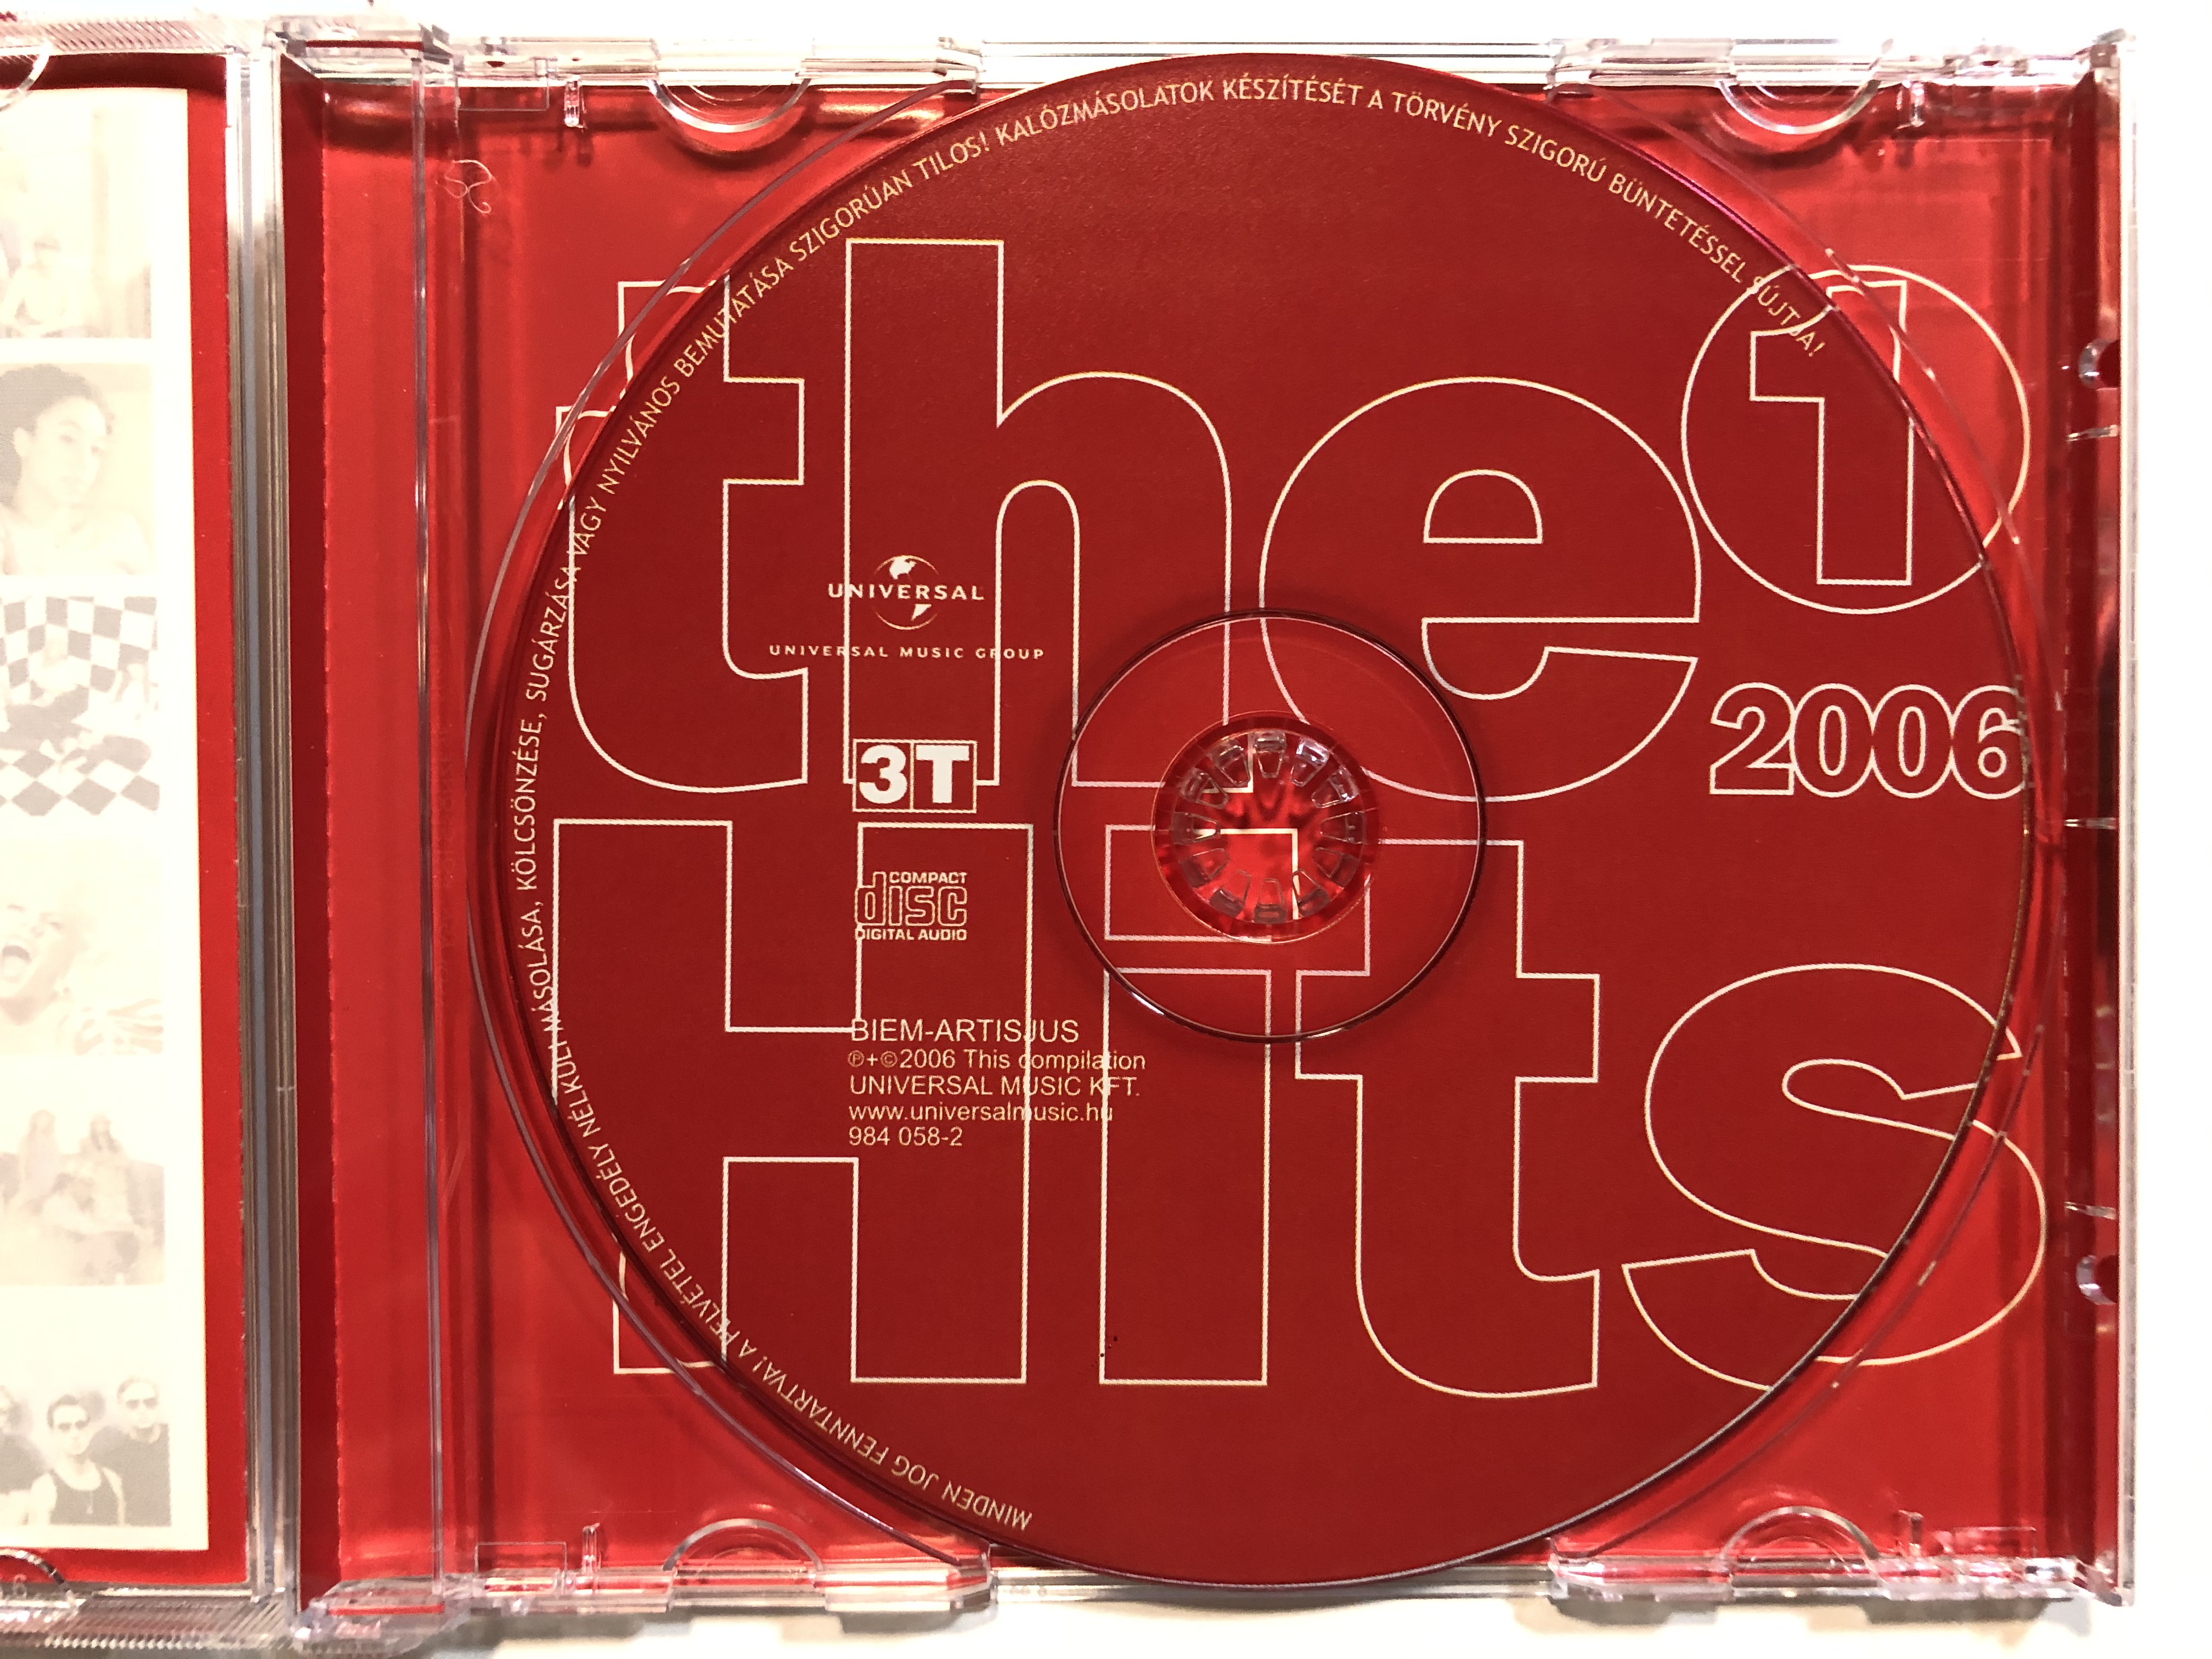 The Hits 2006/1 / Universal Music Kft. Audio CD 2006 / 984058-2 -  bibleinmylanguage